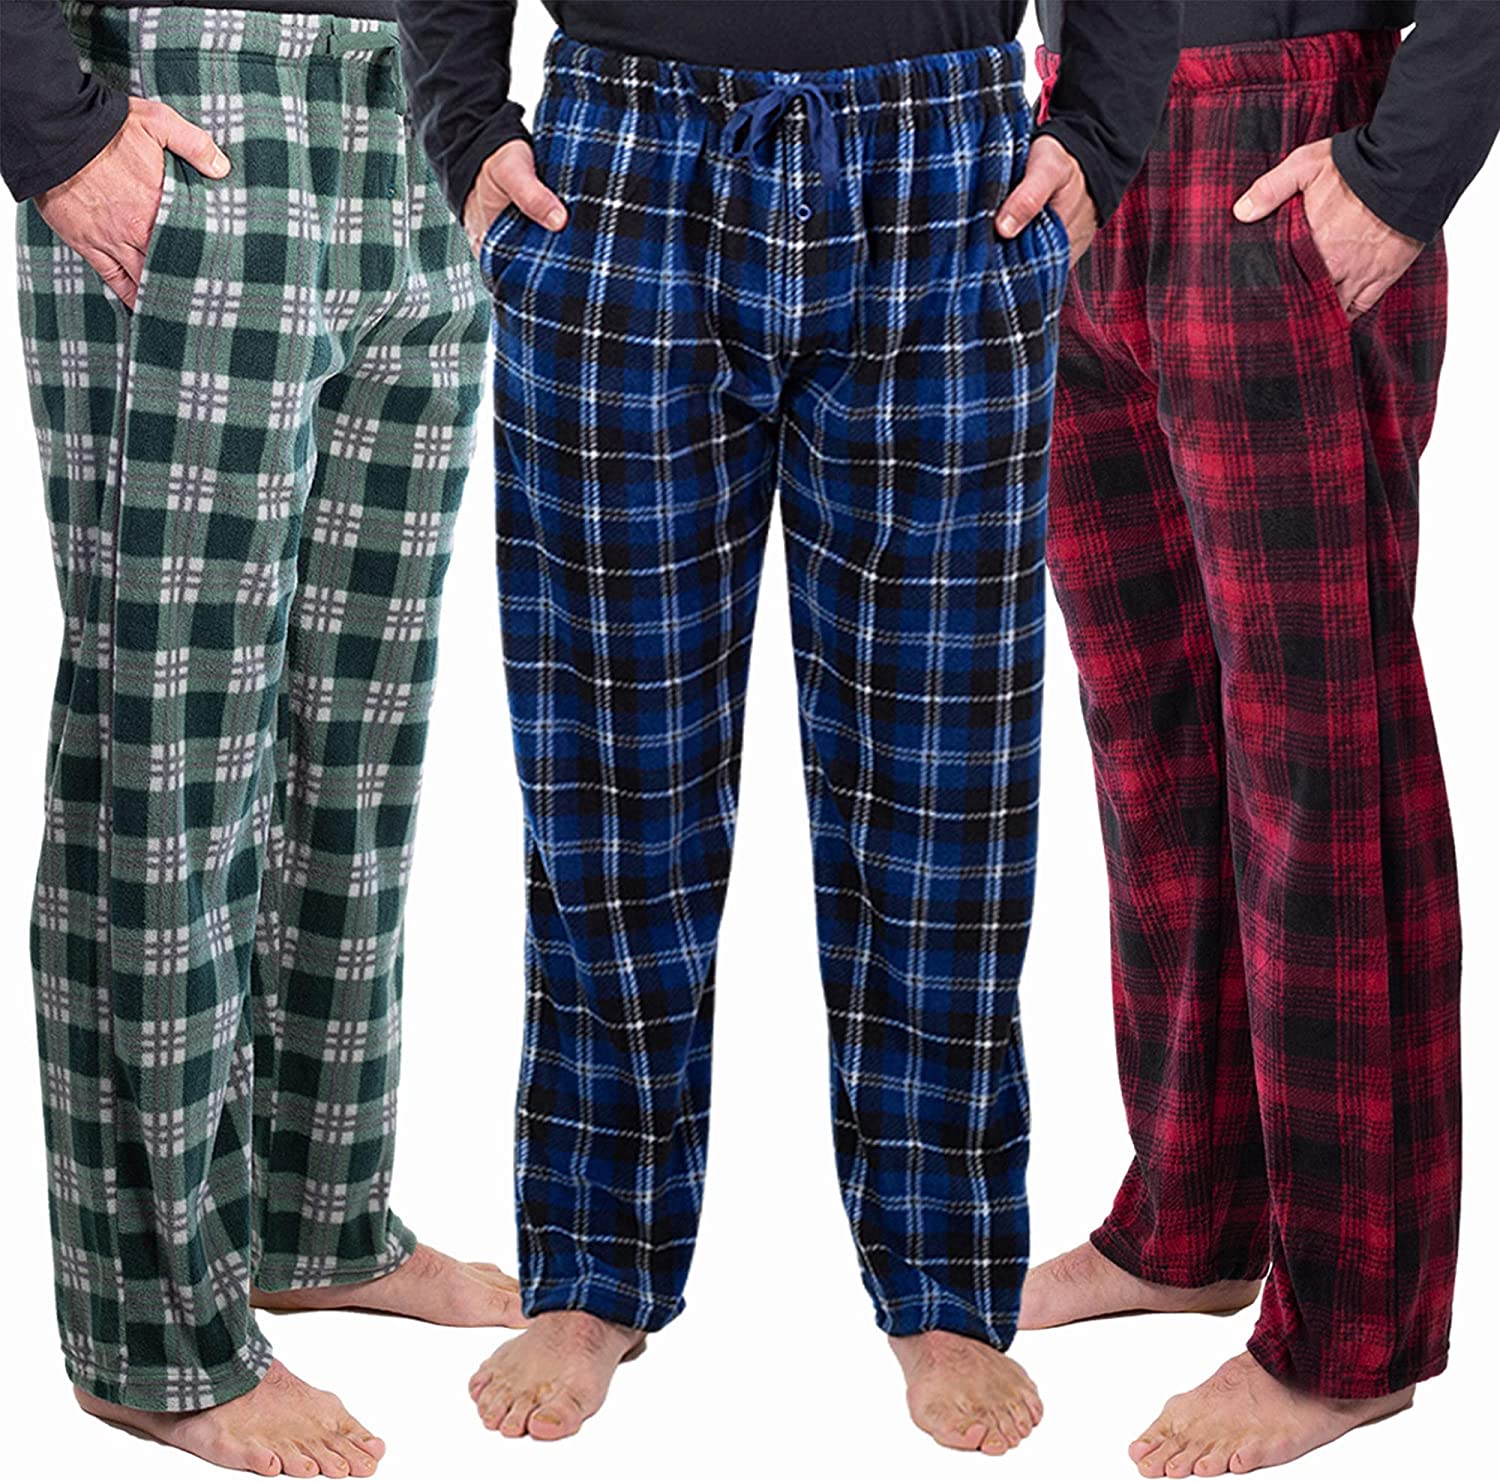 DG Hill 3 Pack Plaid Mens Pajama Pants Set Bottoms Fleece Lounge